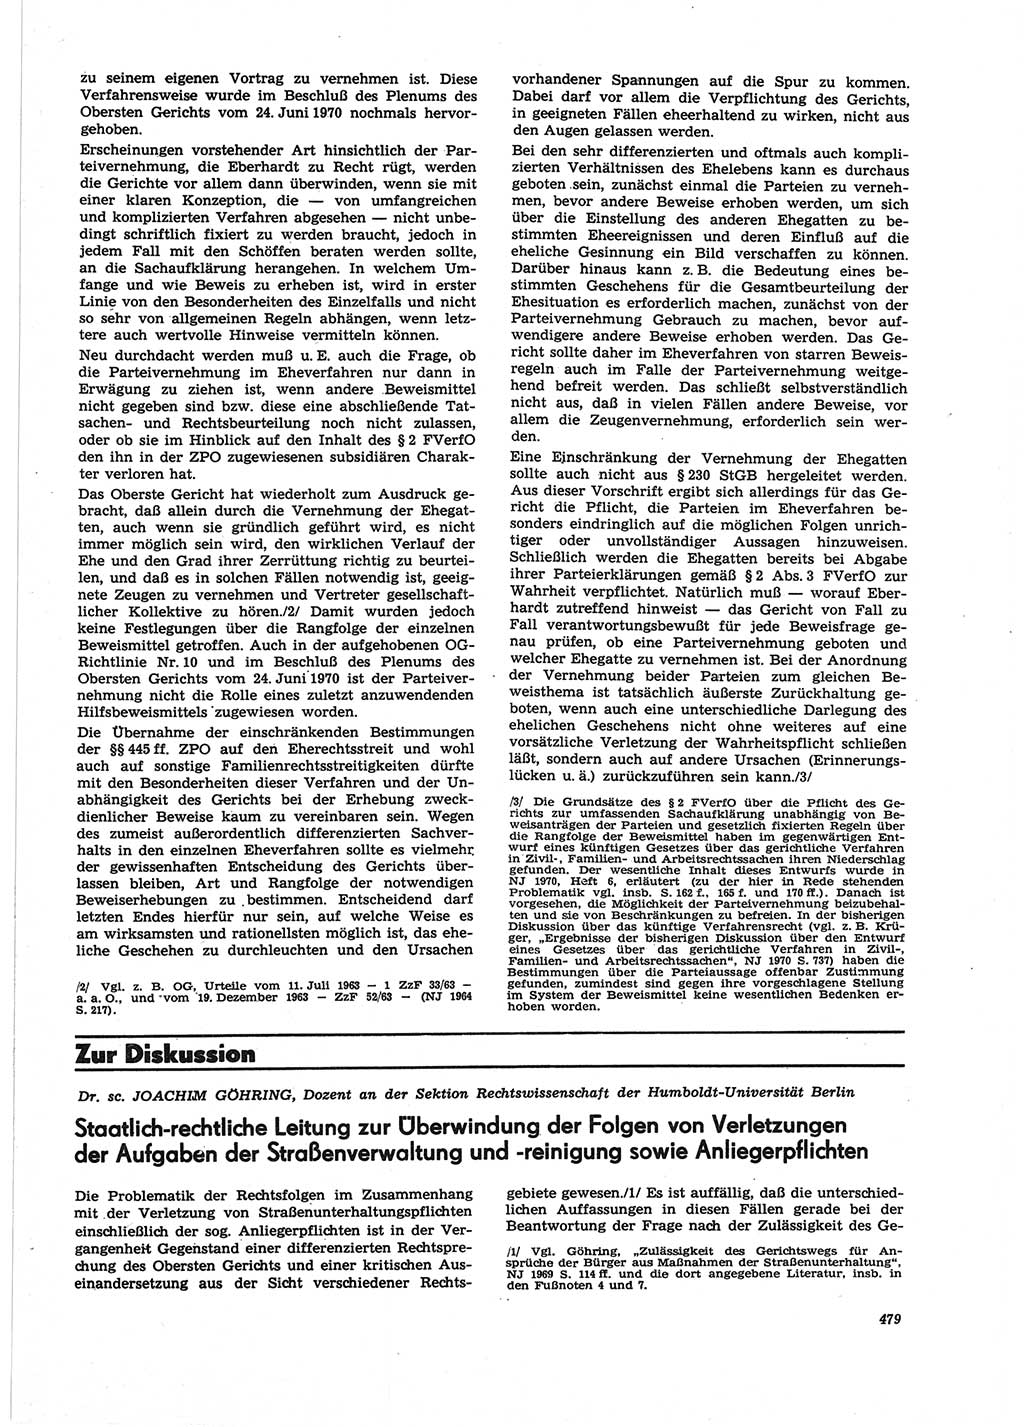 Neue Justiz (NJ), Zeitschrift für Recht und Rechtswissenschaft [Deutsche Demokratische Republik (DDR)], 25. Jahrgang 1971, Seite 479 (NJ DDR 1971, S. 479)